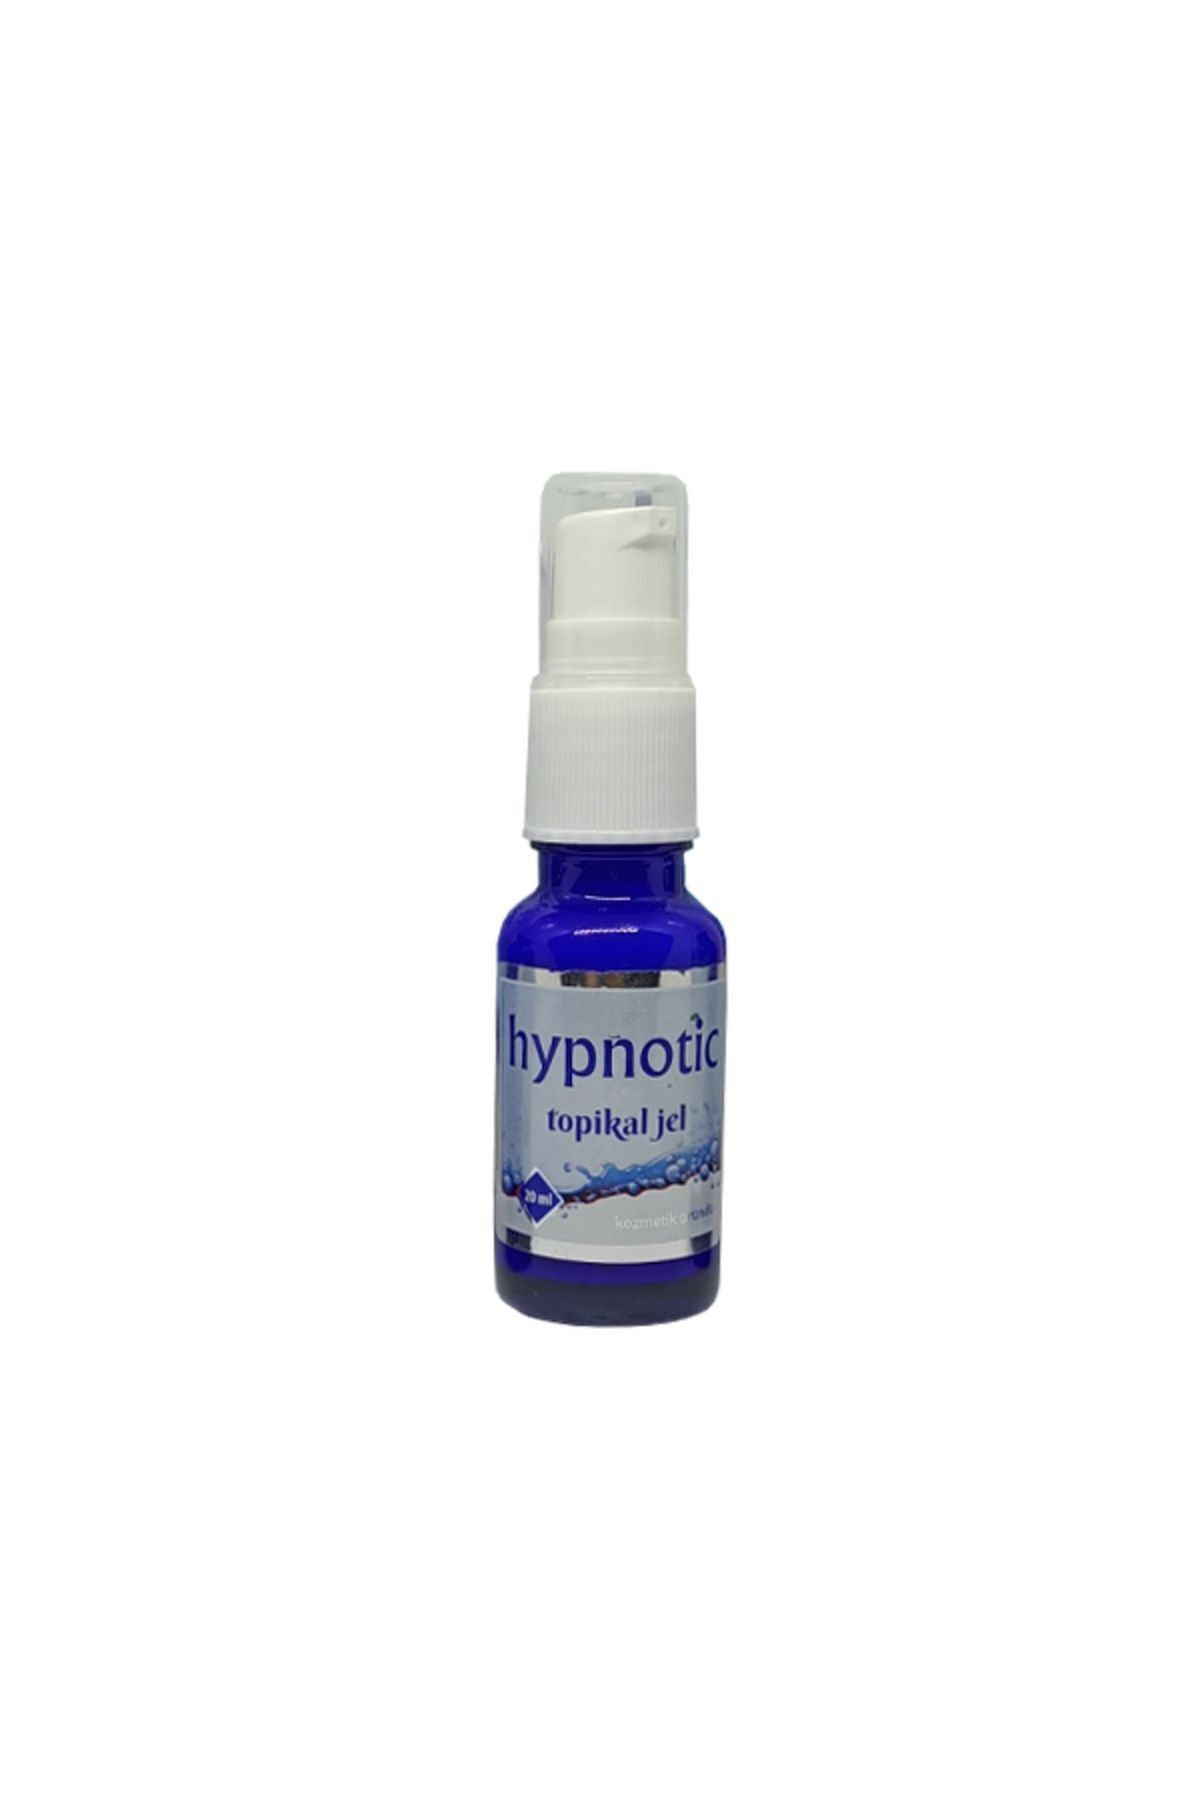 ARMONİKONYA 20 ml Hypnotic Topical Cream Topikal Krem Acı Azaltıcı Epilasyon 20ml Anestezi Krem